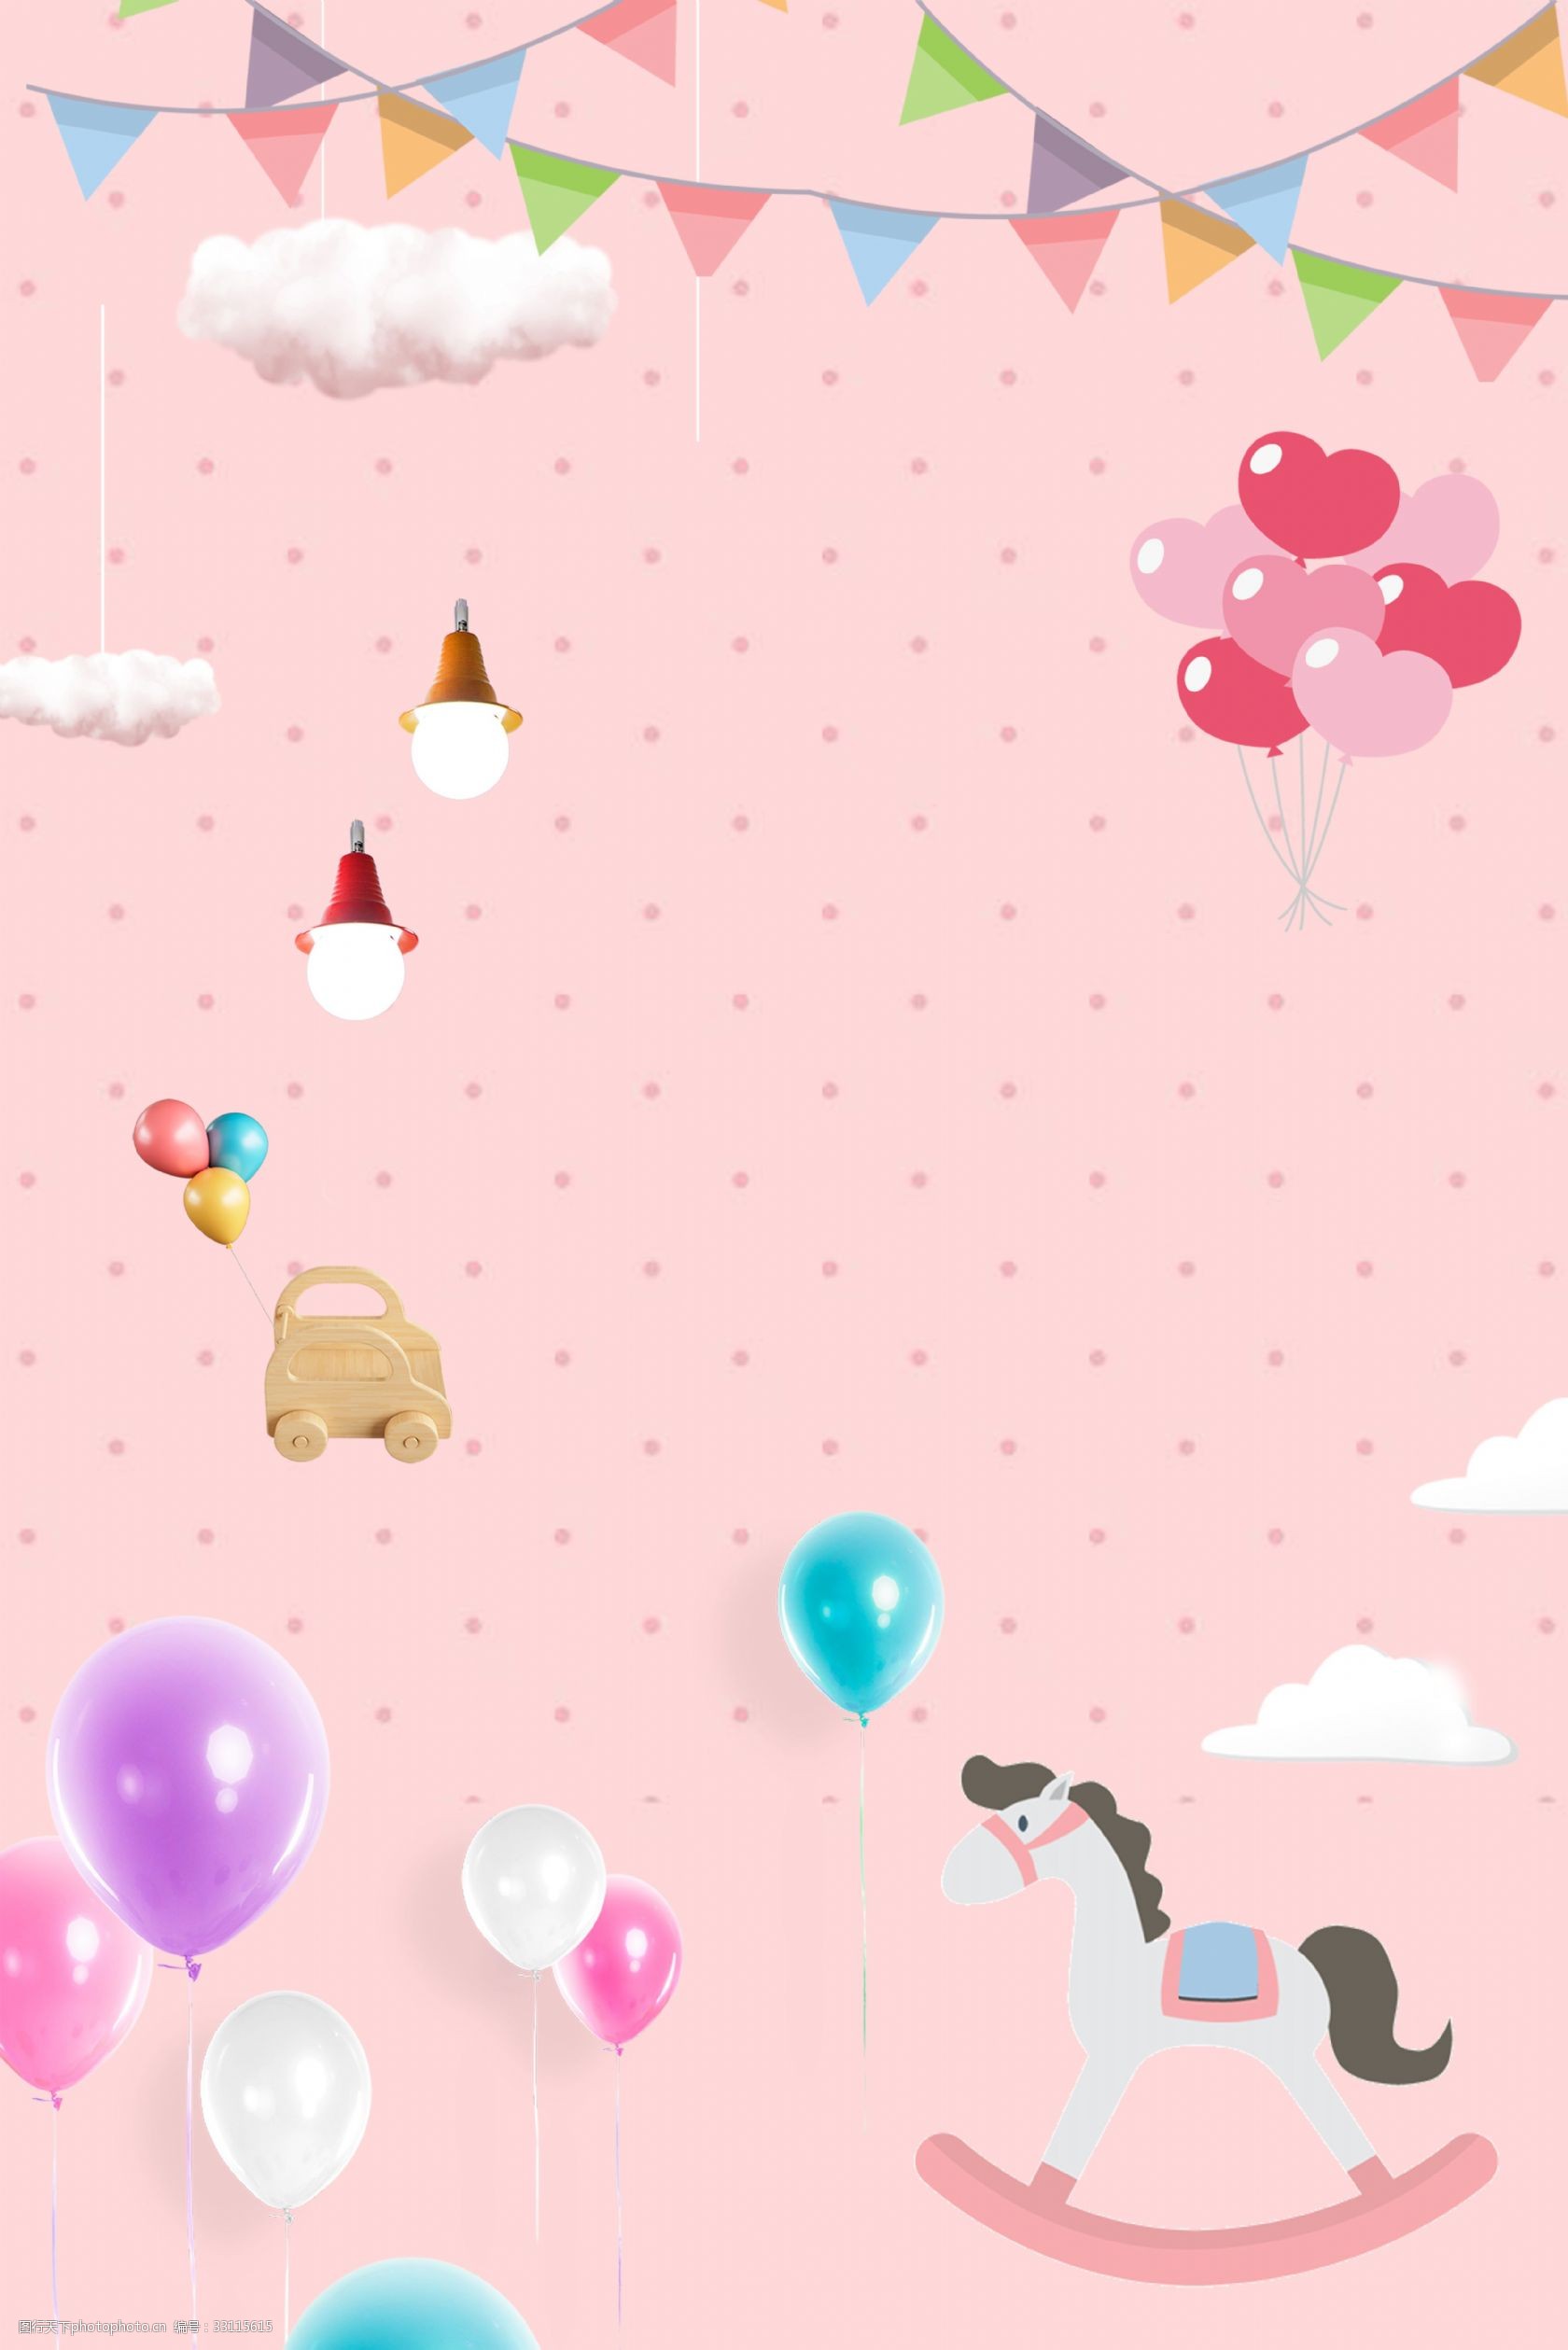 61 儿童节 粉色 清新 撞色气球 木马 简约 可爱 psd分层 海报背景